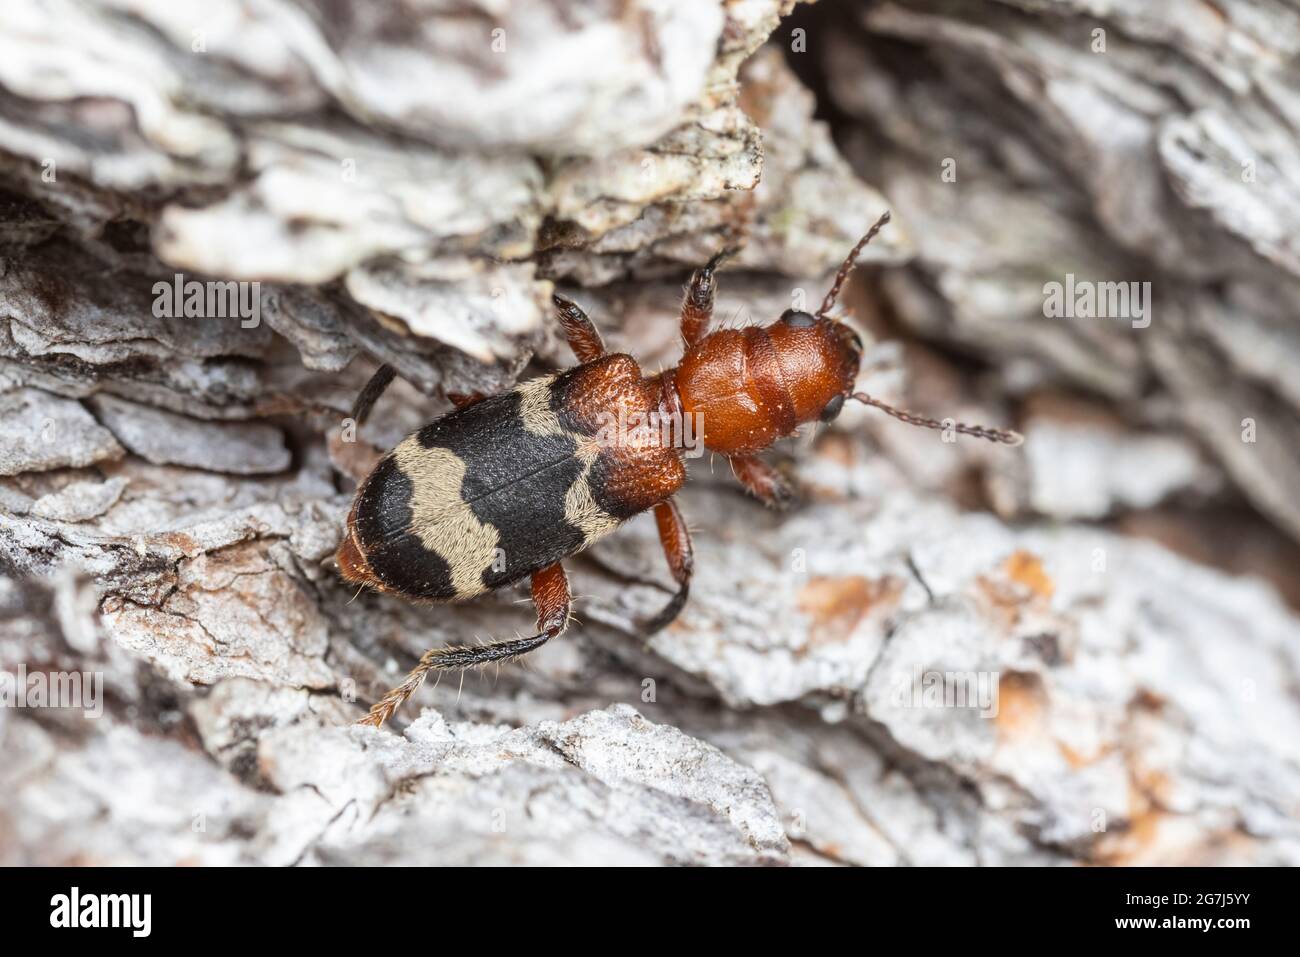 A Dubious Checkered Beetle (Thanasimus dubius) on a dead Eastern White Pine (Pinus strobus) tree. Stock Photo